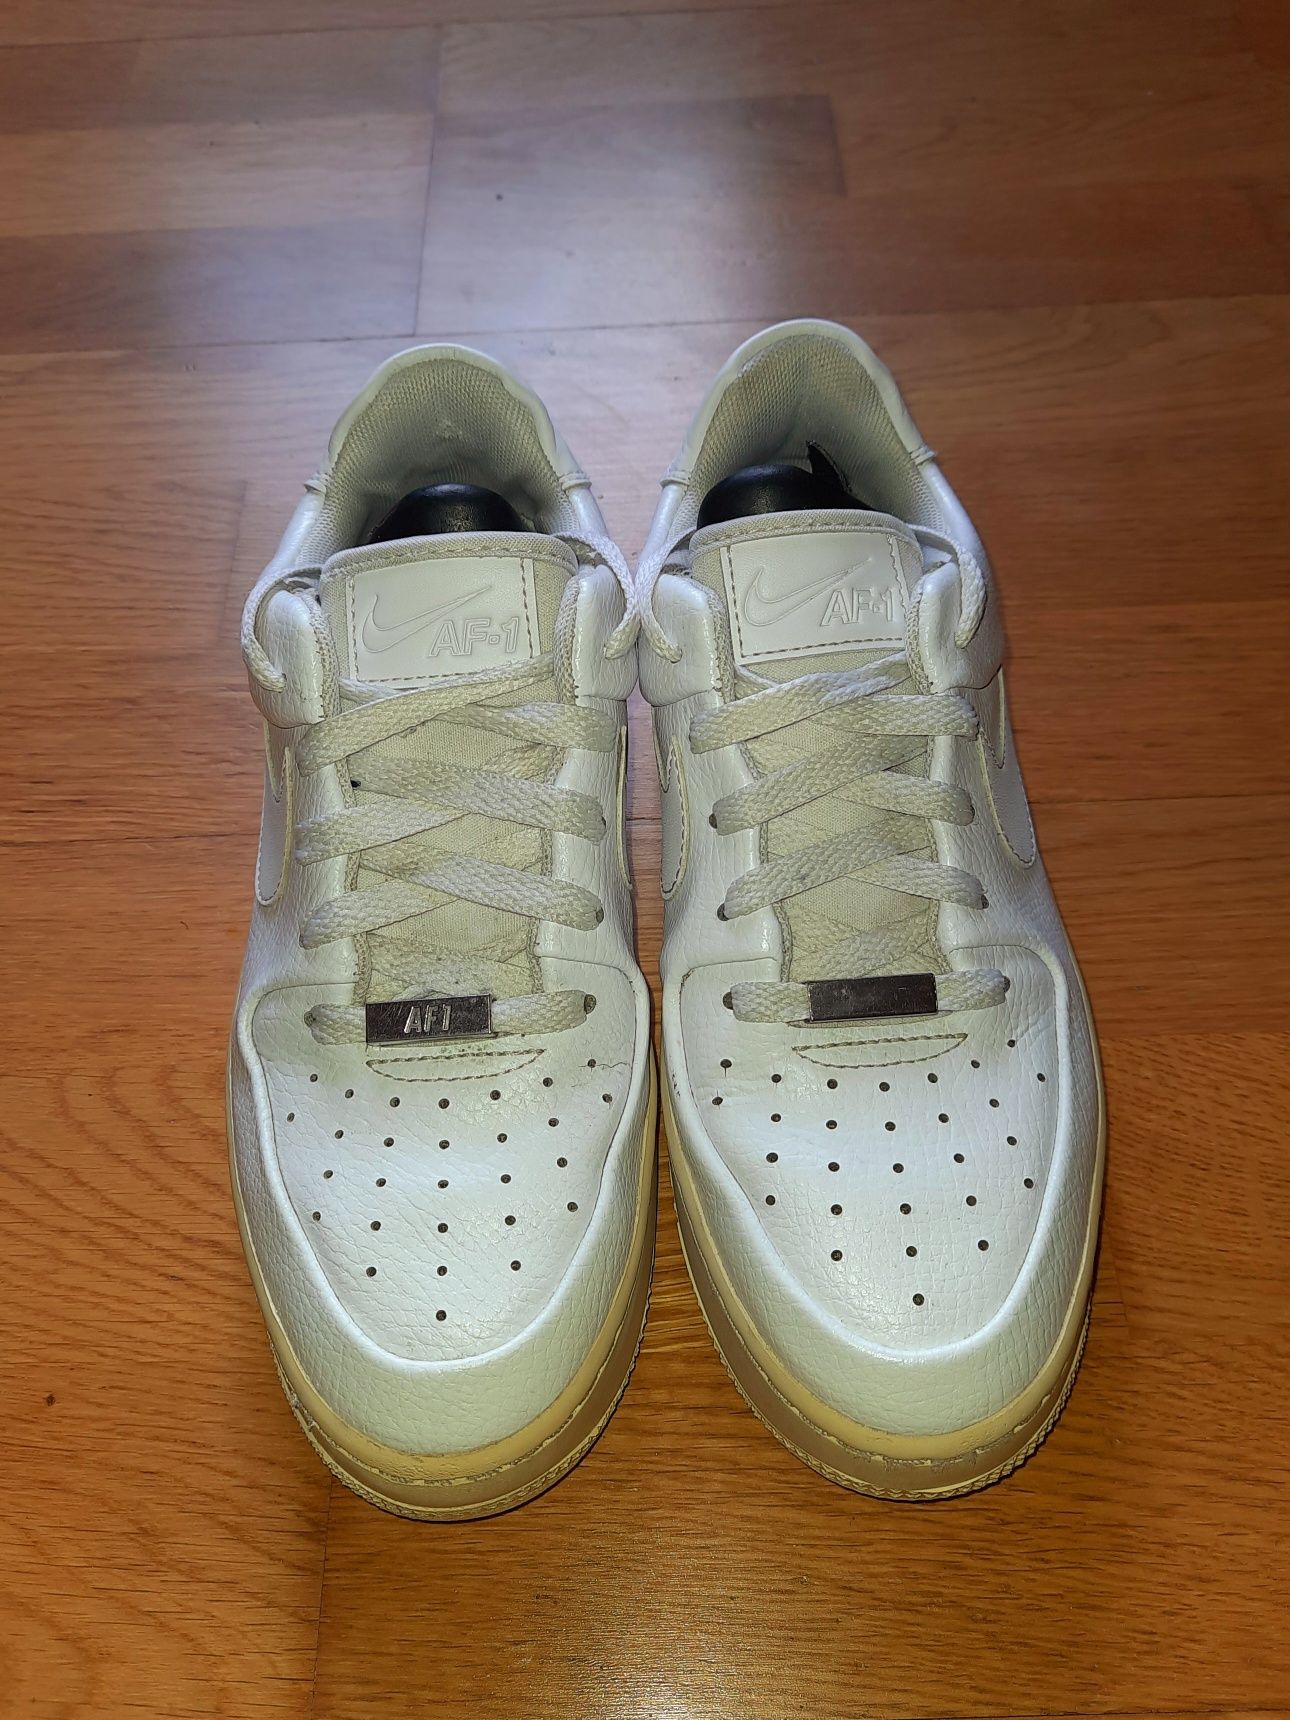 Кроссовки Nike Air Force 1 кеды Air Jordan Dunk кожаные